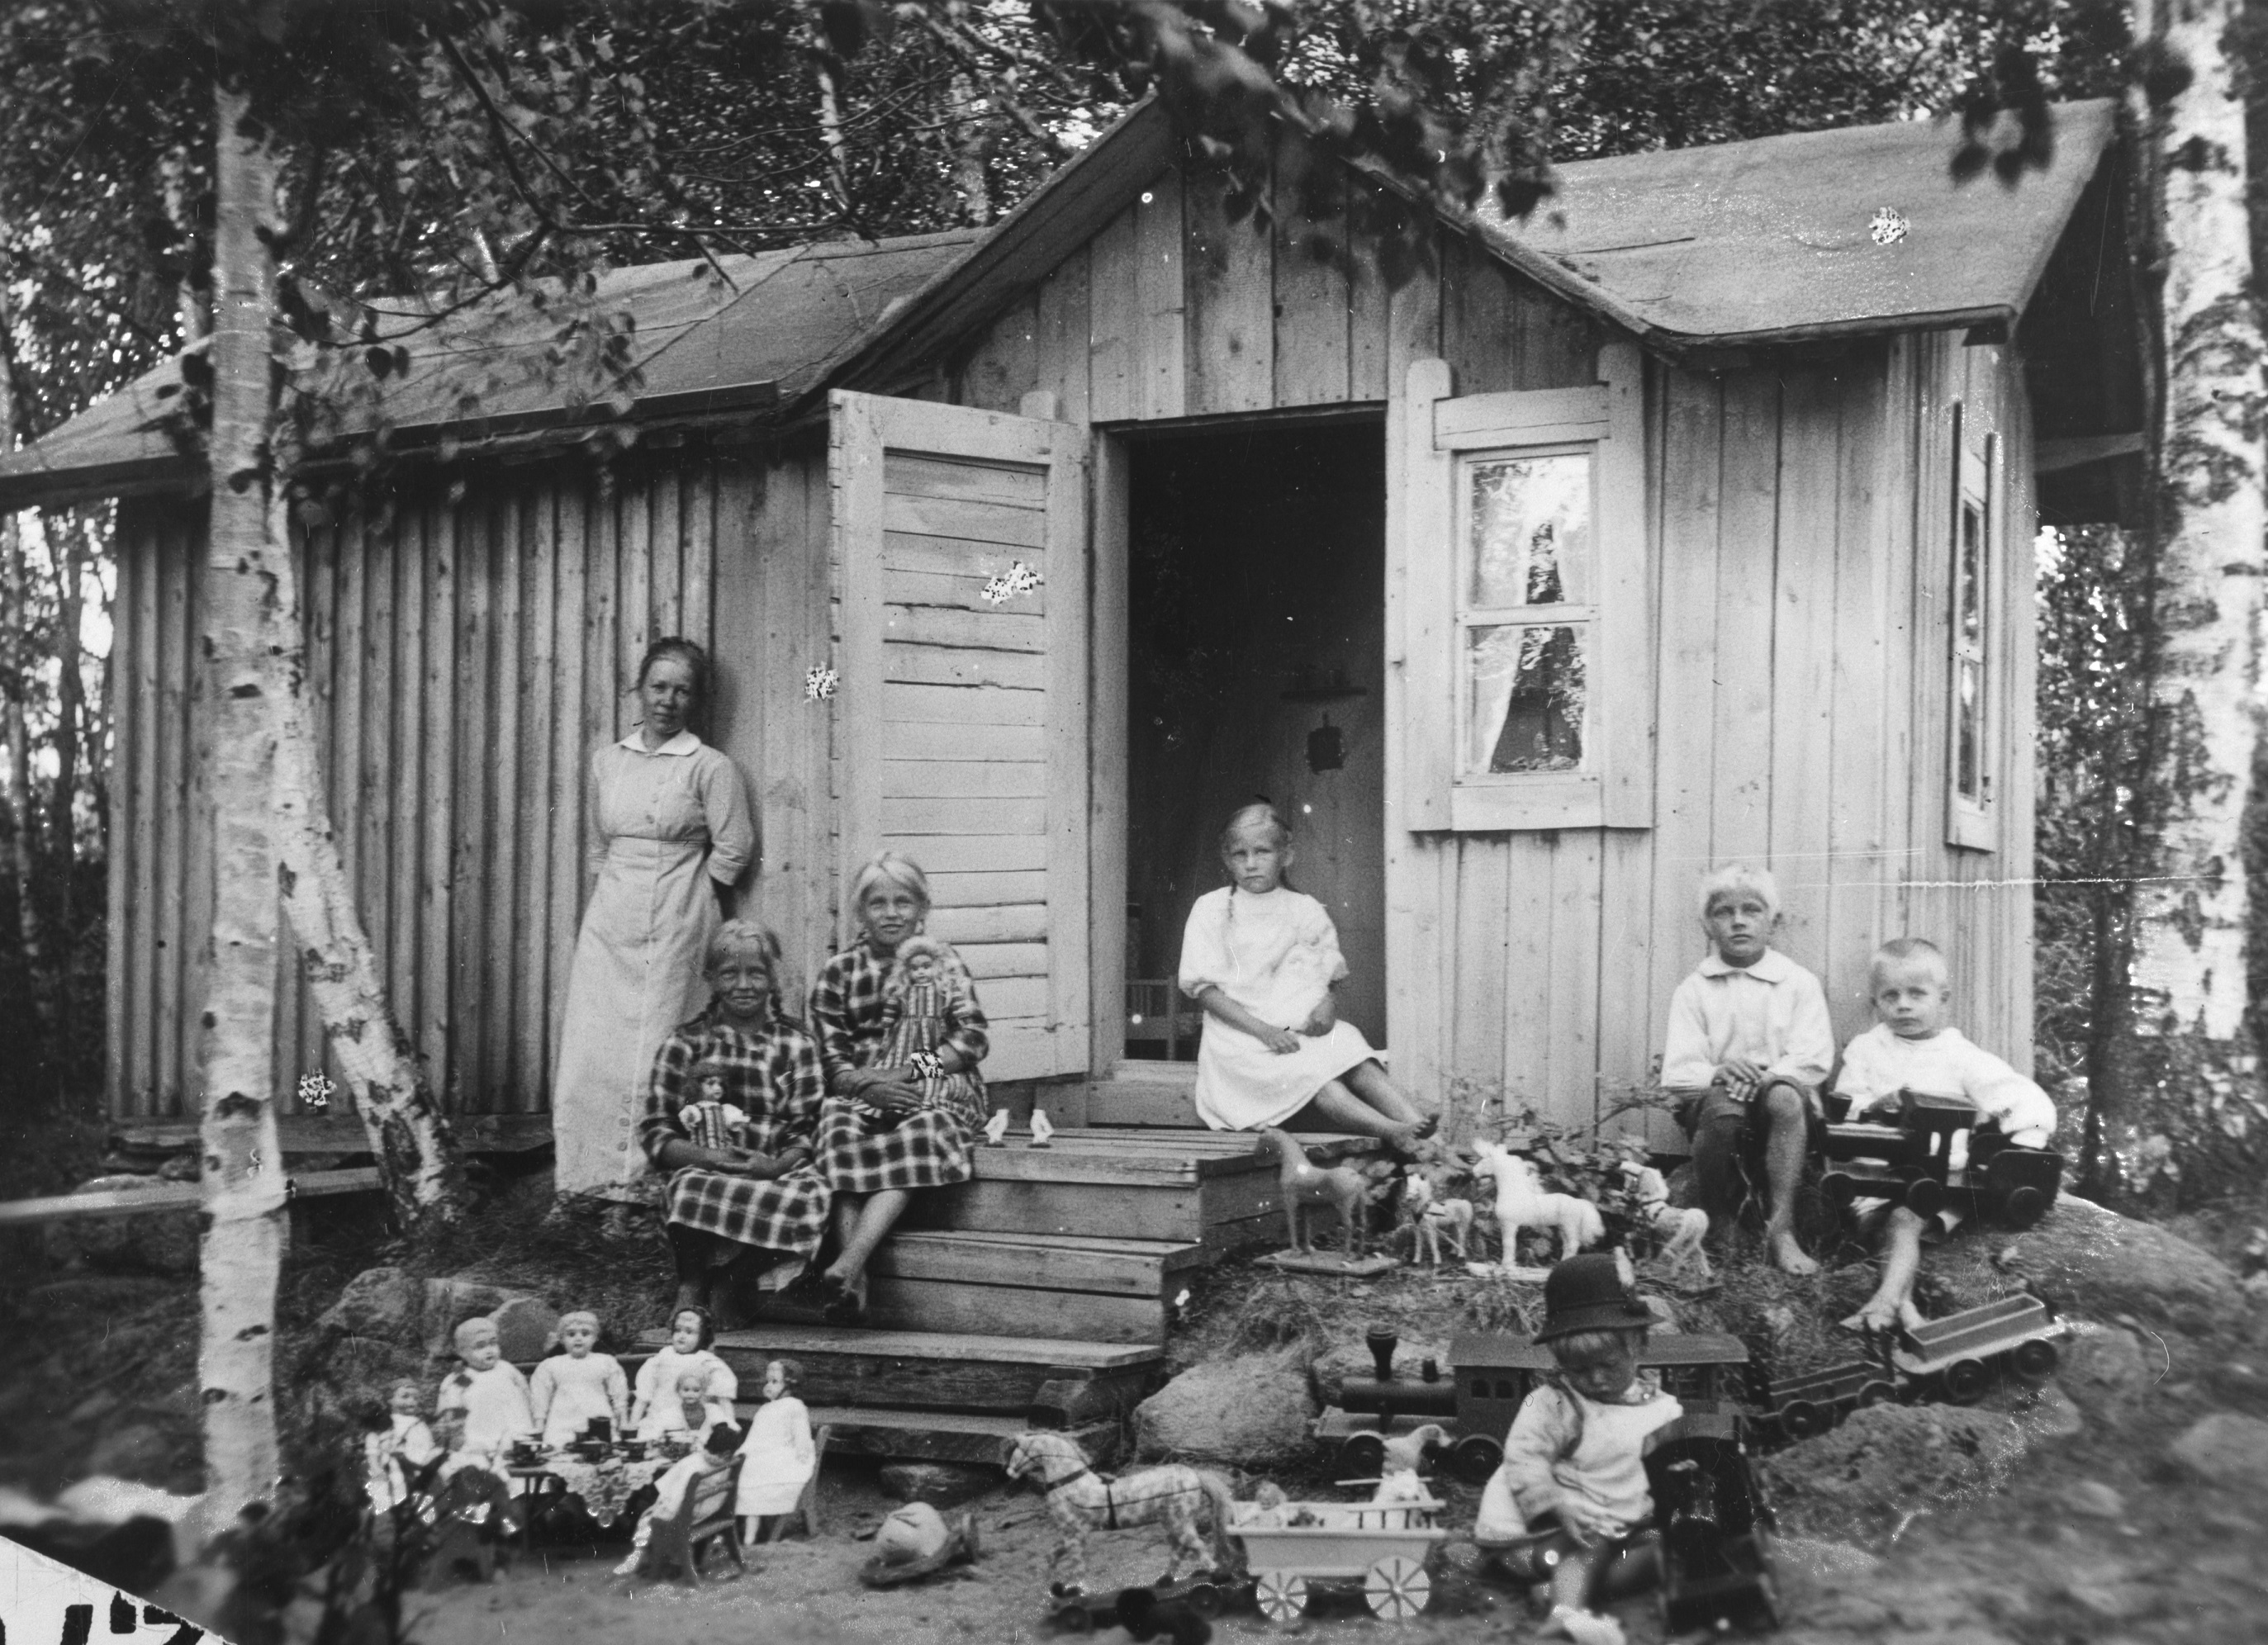 Kuvassa on talo. Talon ulkopuolella on vasemmalla aikuinen nainen. Talon rappusilla ja viereisellä kalliolla istuu kuusi lasta. Kuvan etuosassa näkyy leikkikaluja.